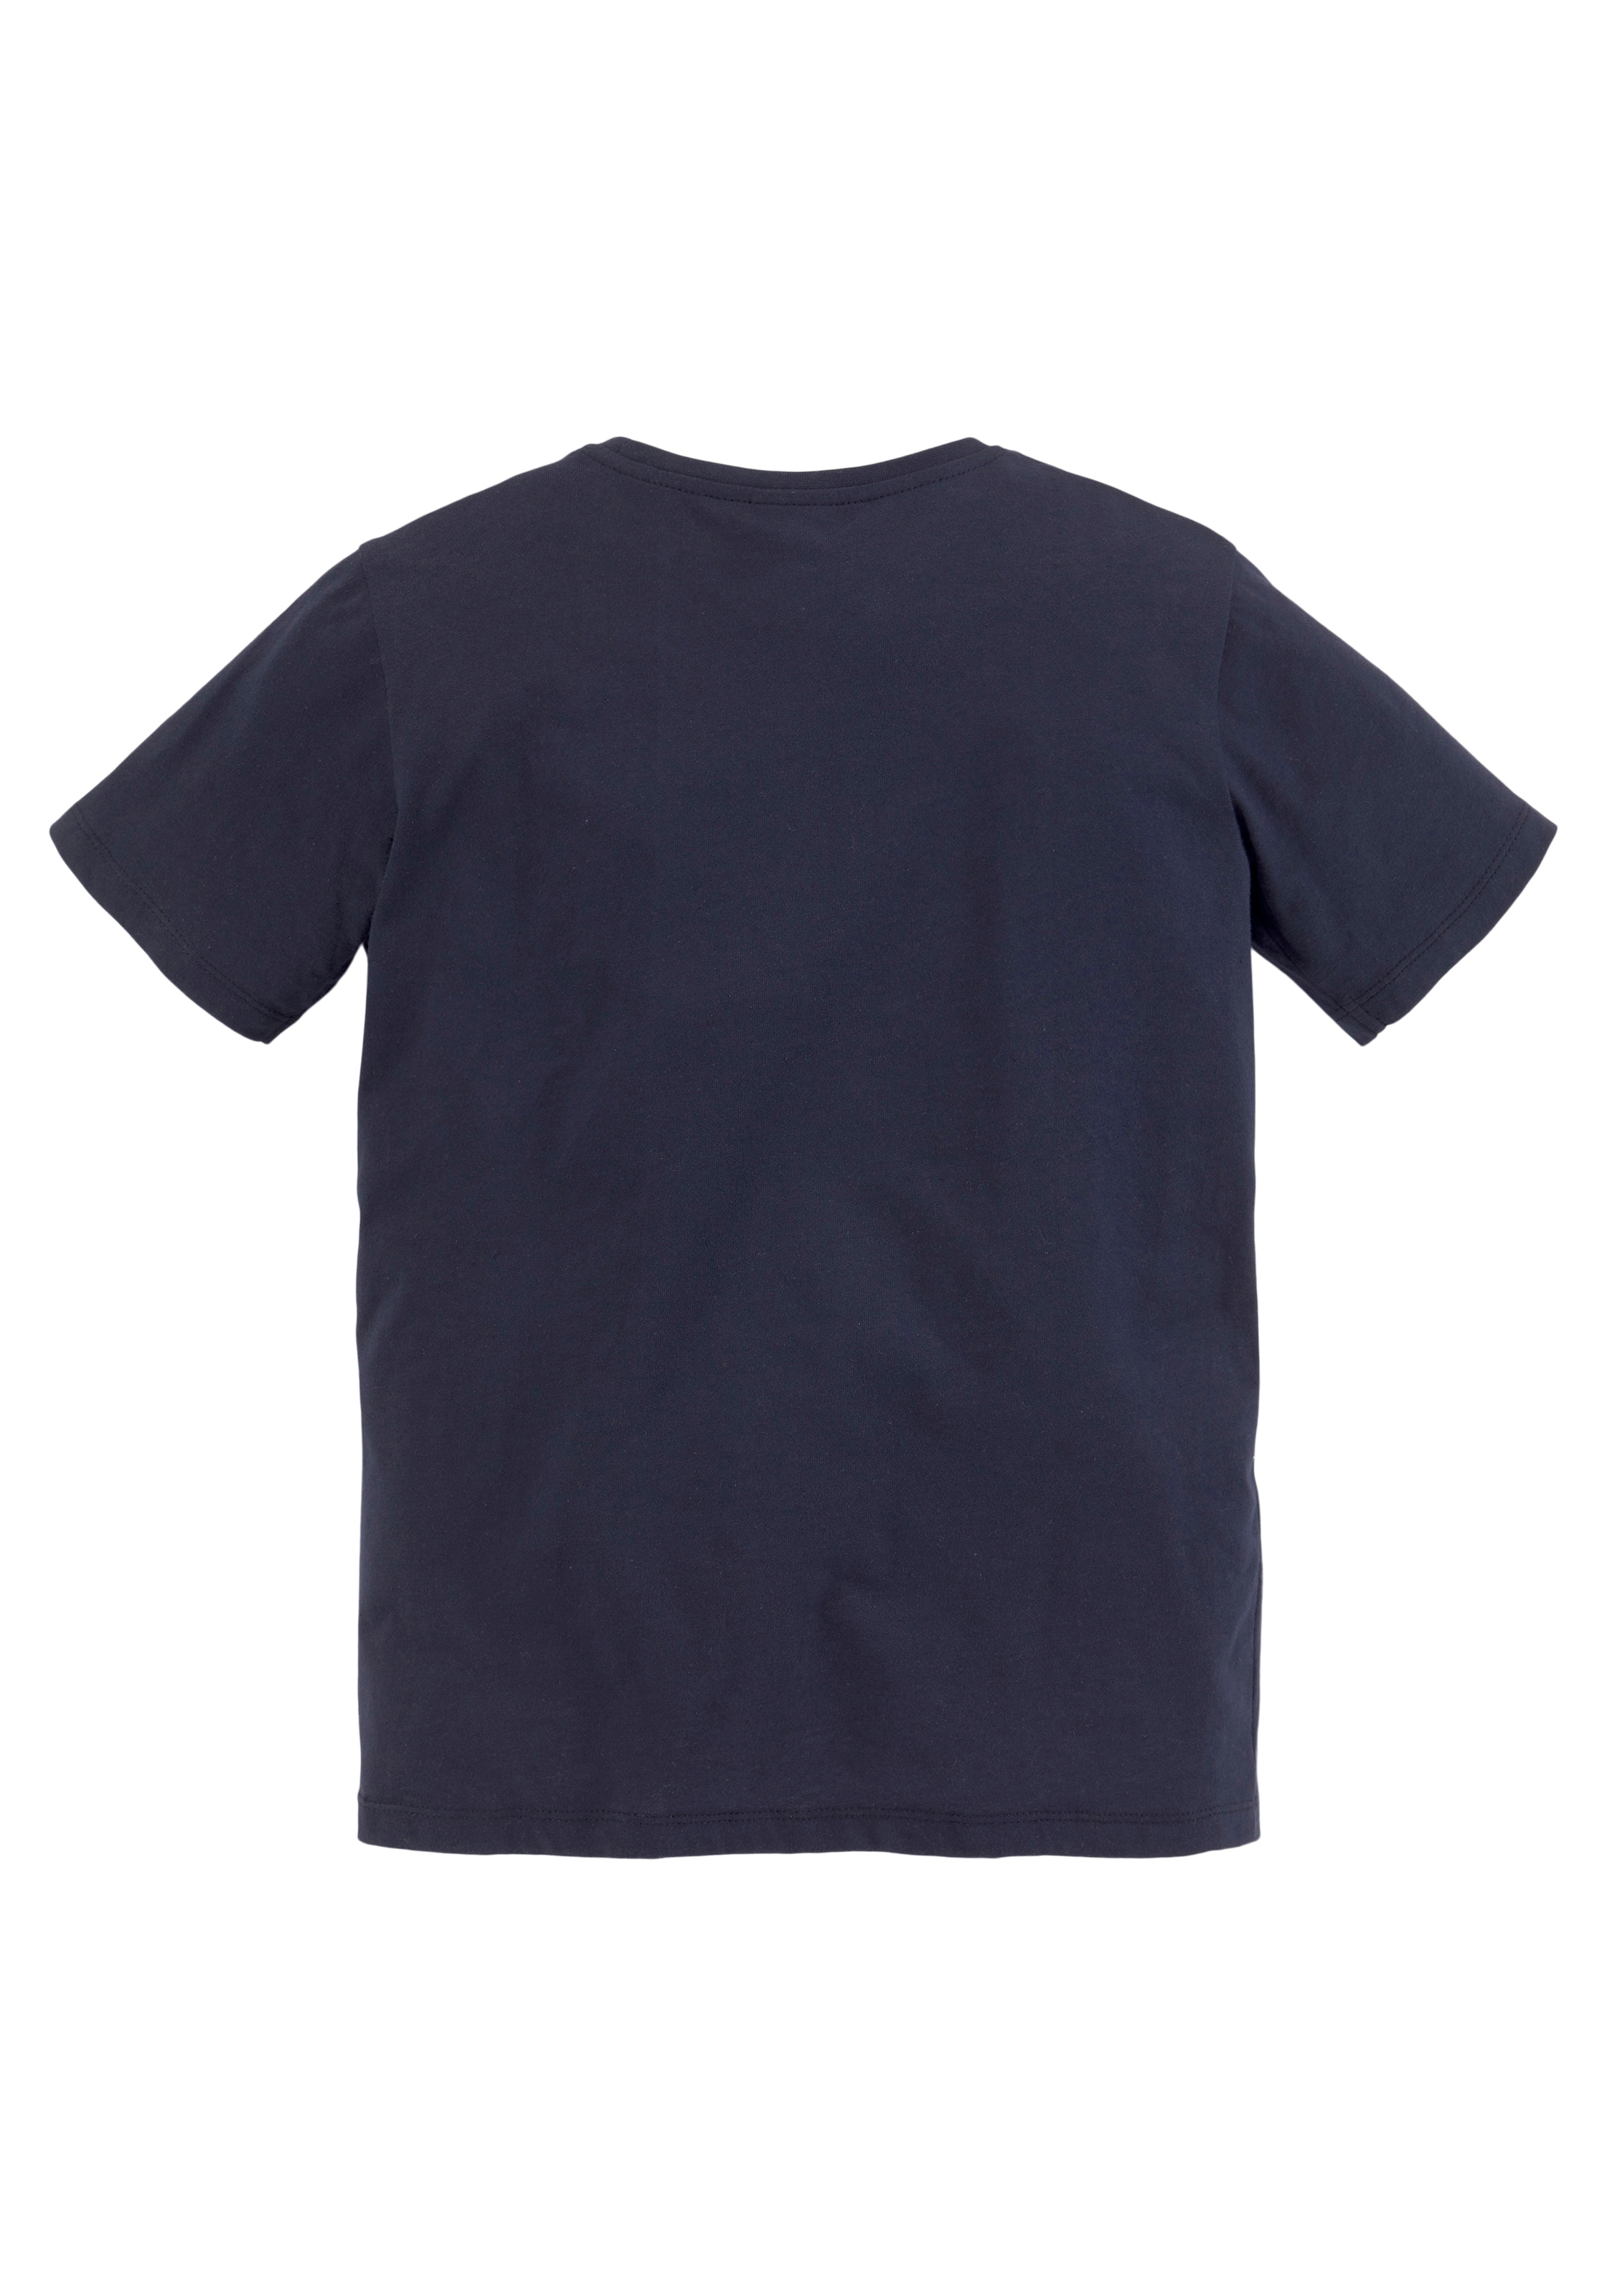 KIDSWORLD T-Shirt & Sweatbermudas, Raten 2 auf 2), BIKER (Set, tlg., kaufen